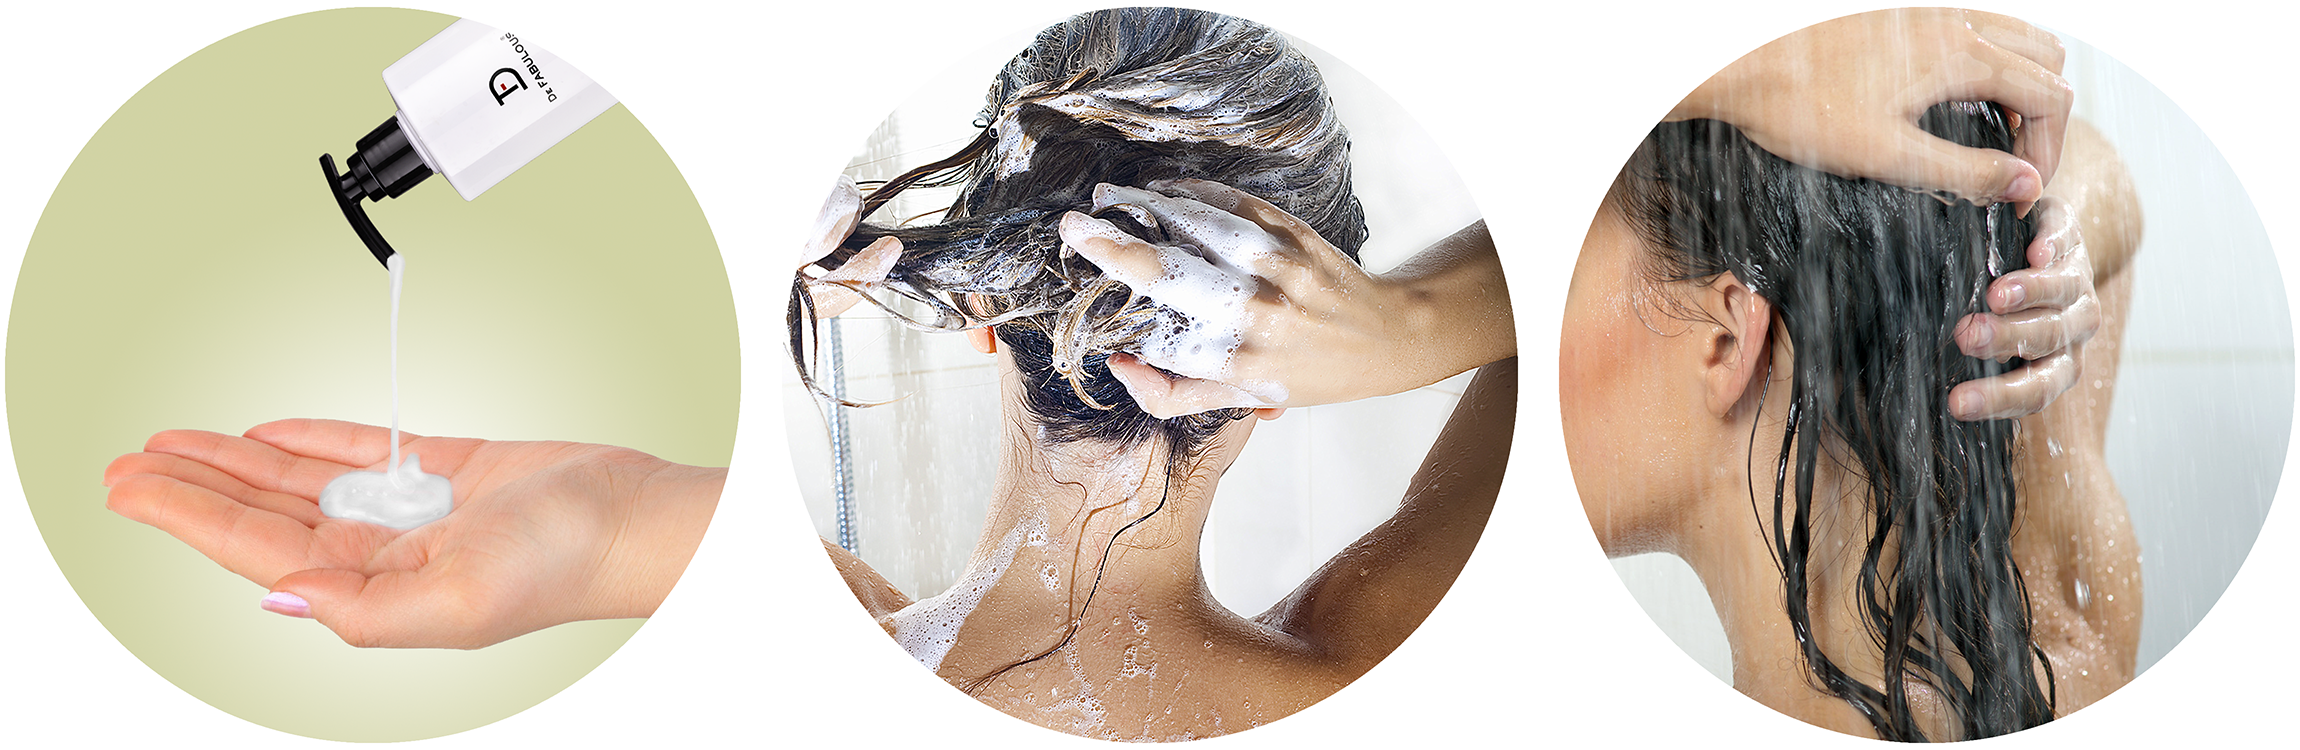 reviver-shampoo-steps